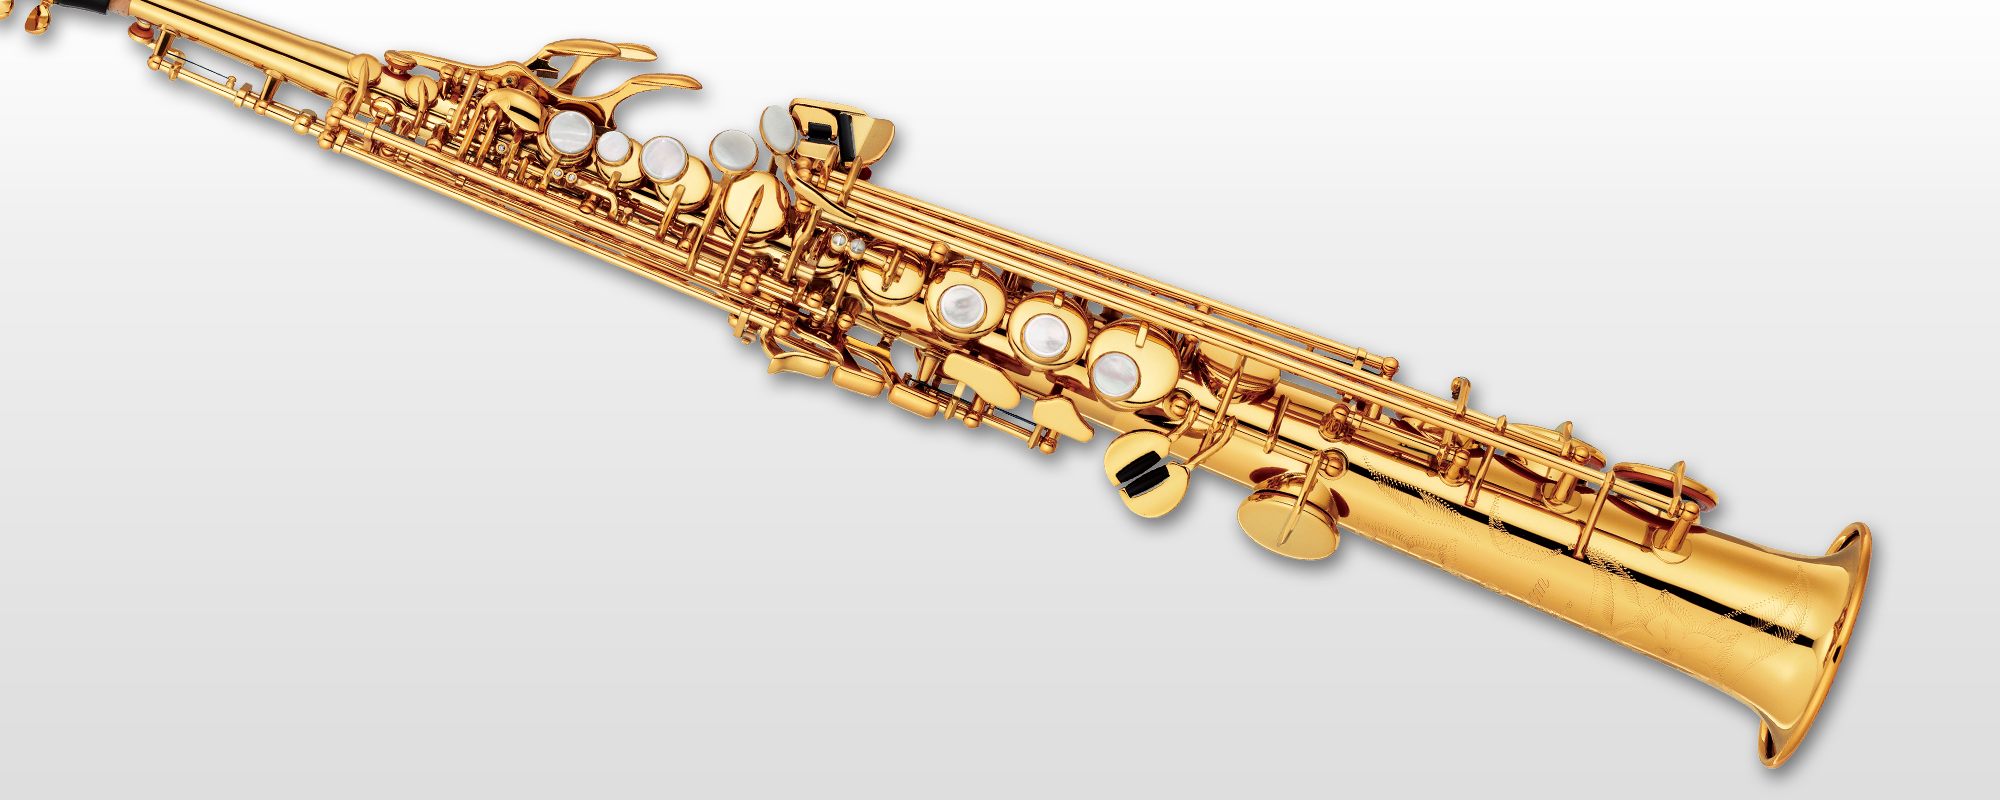 YSS-82Z/82ZR - Features - Saxophones - Brass & Woodwinds - Musical 